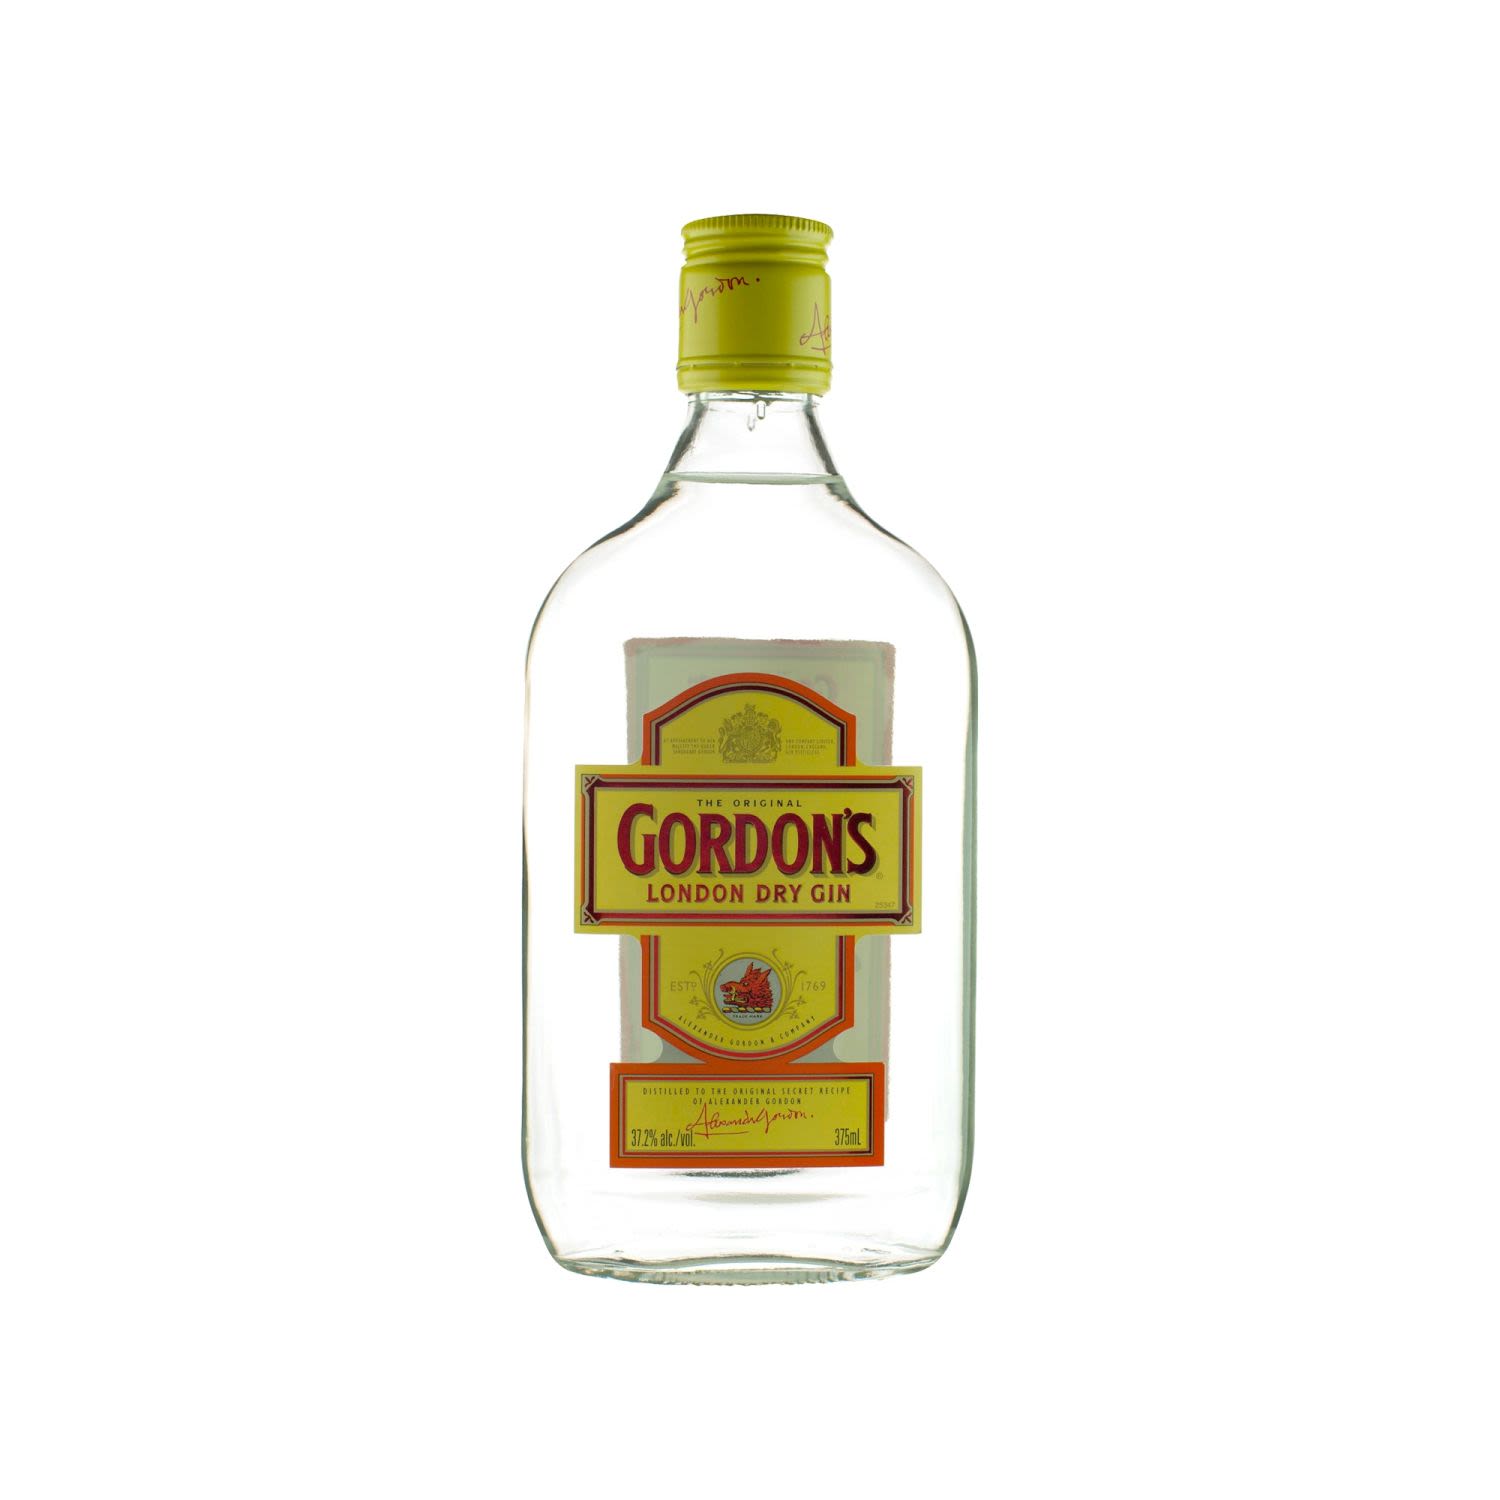 Gordon's London Dry Gin 375mL Bottle